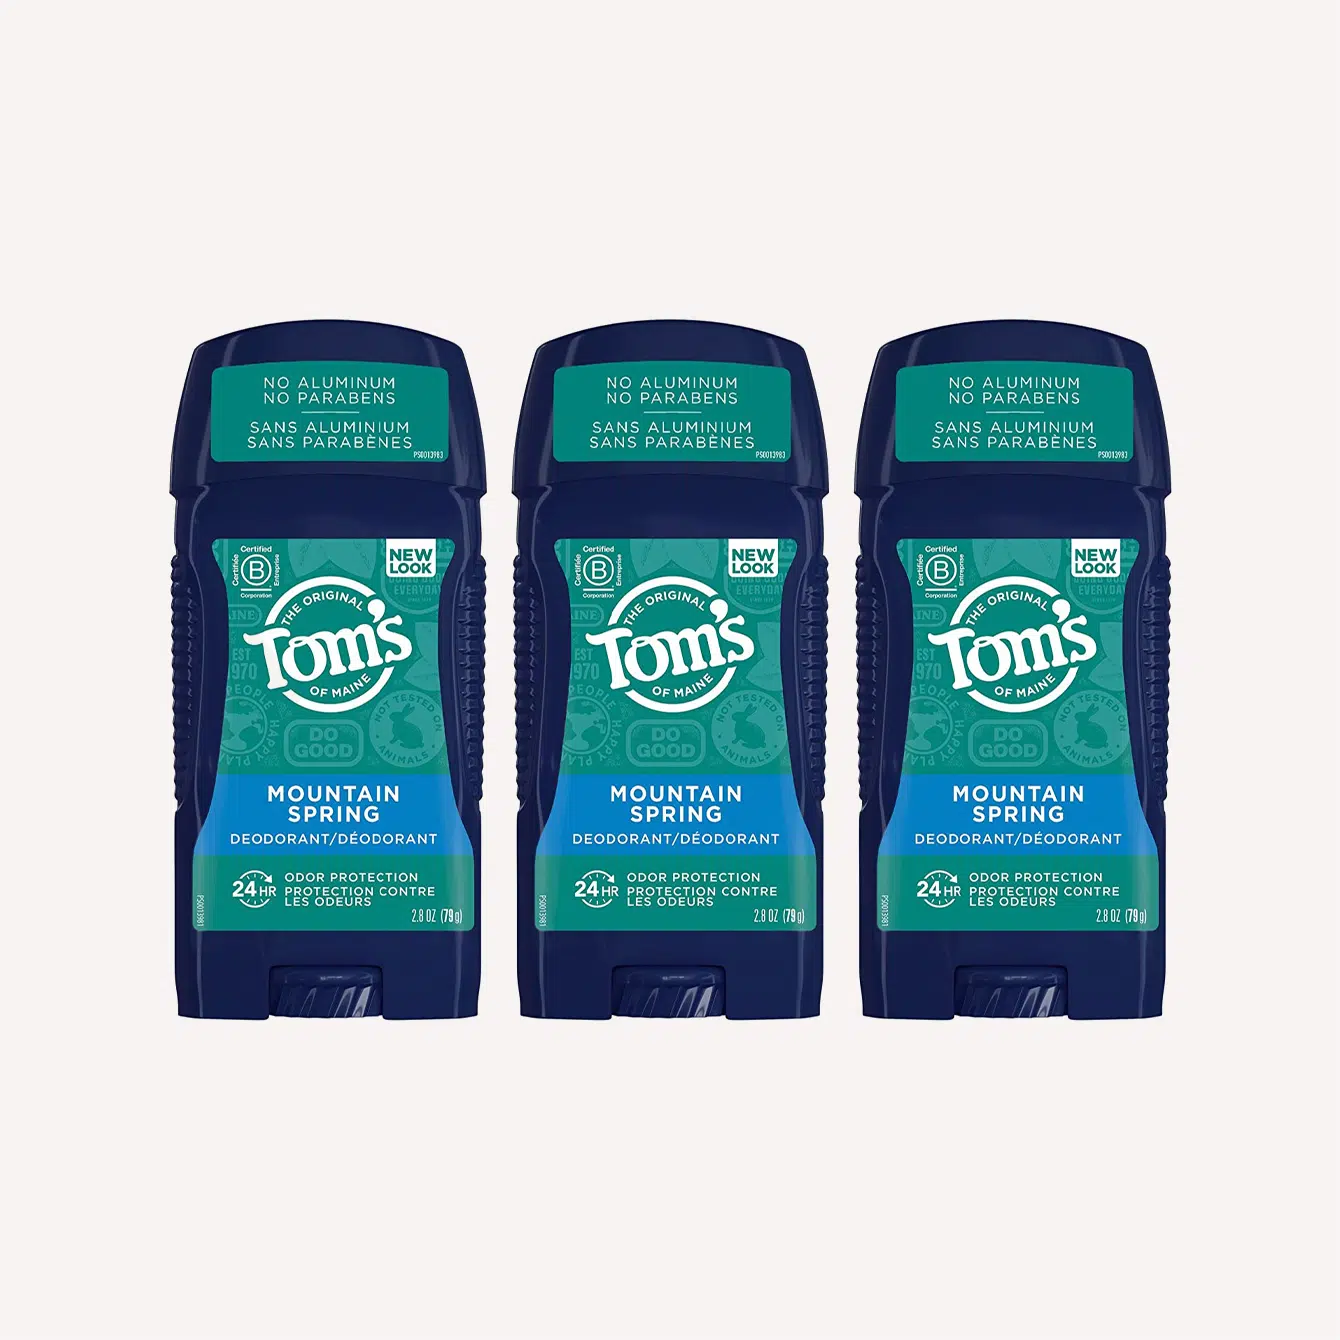 Toms of Maine Aluminum Free Natural Deodorant